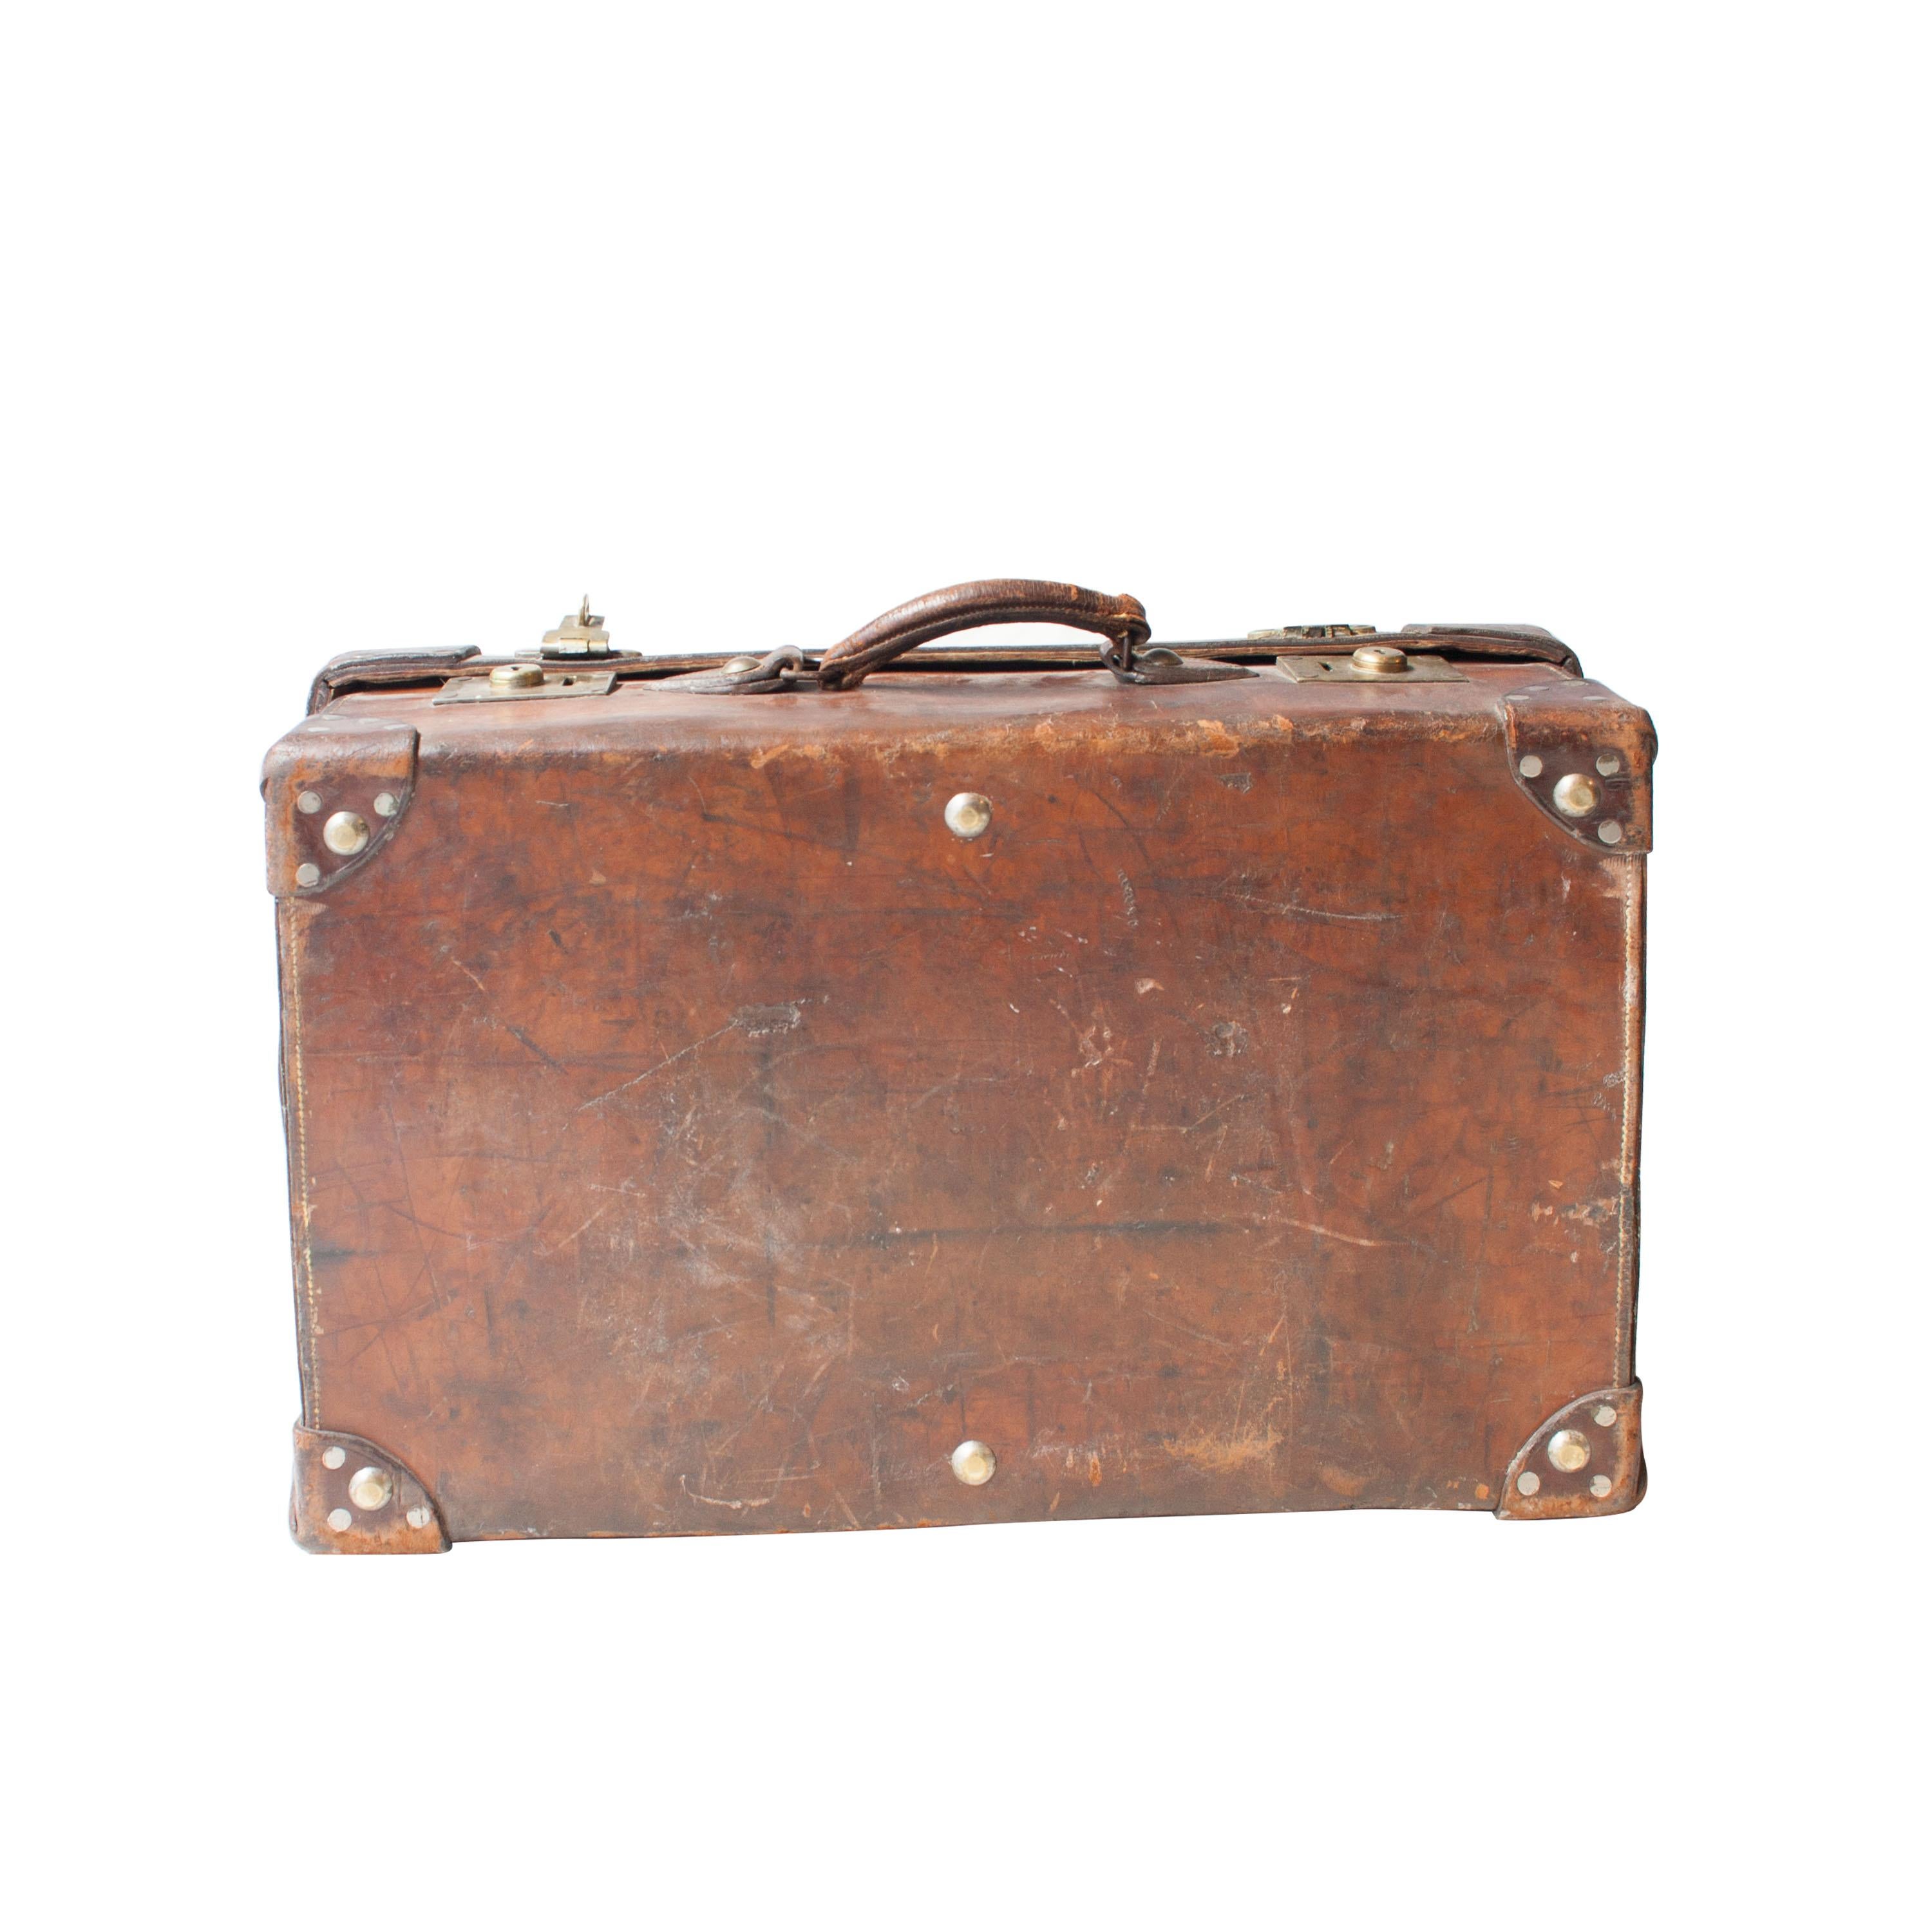 19th century suitcase